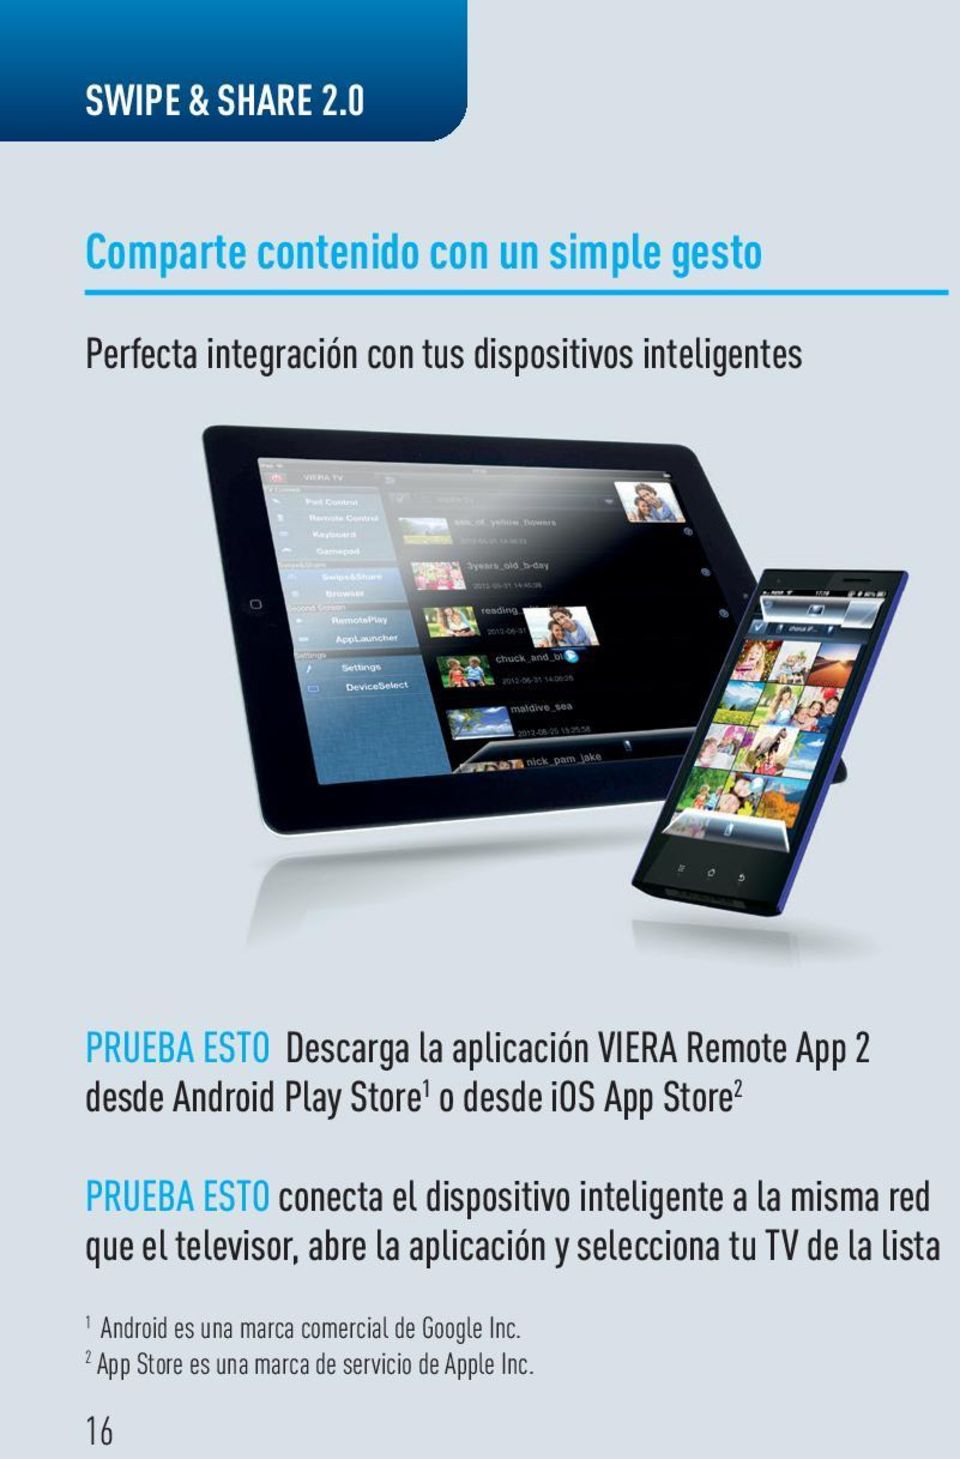 Descarga la aplicación Viera Remote App 2 desde Android Play Store 1 o desde ios App Store 2 Prueba esto